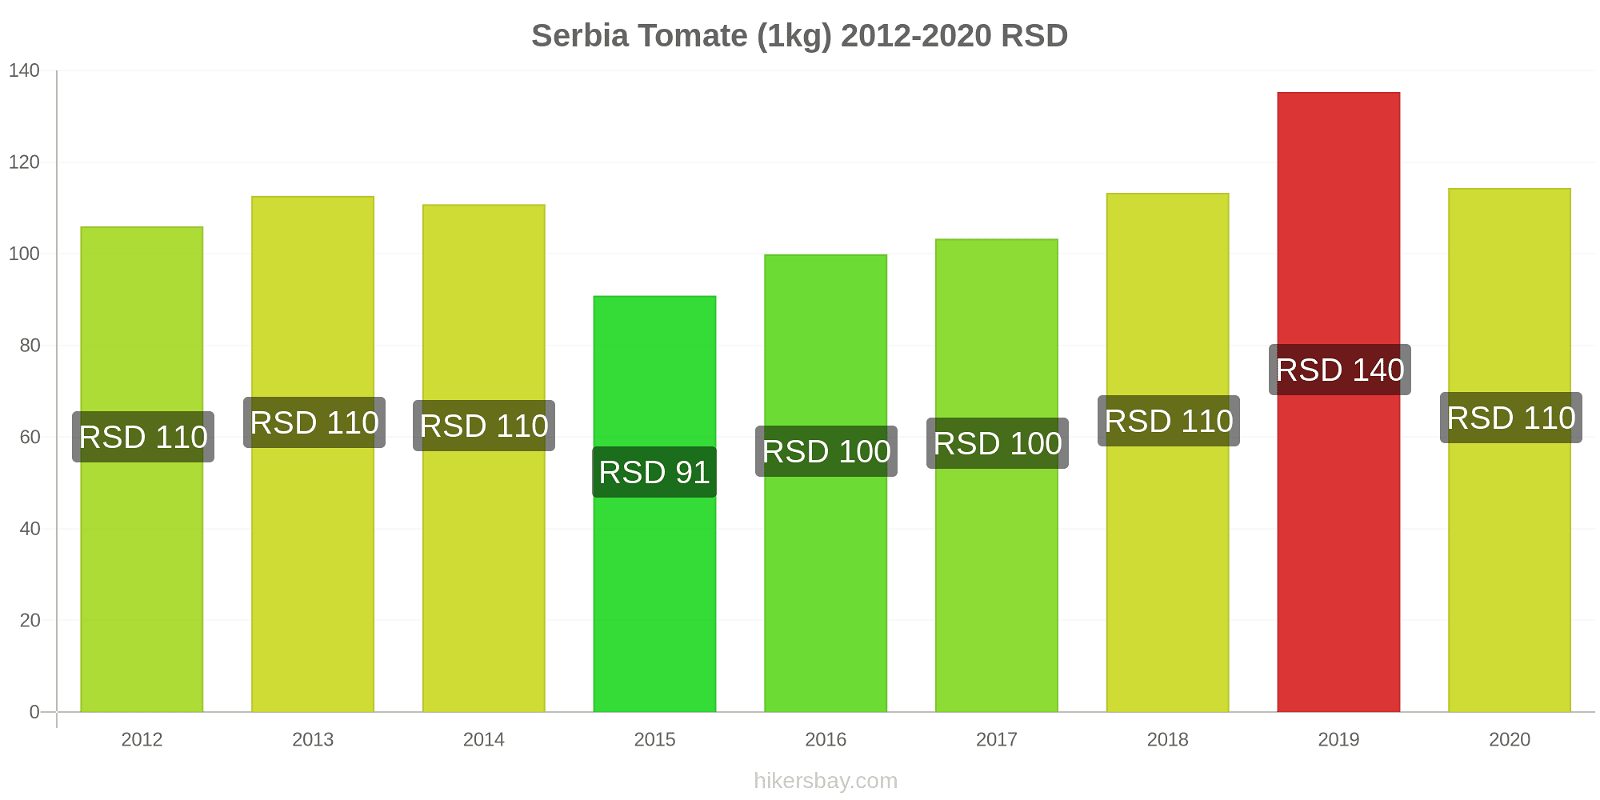 Serbia cambios de precios Tomate (1kg) hikersbay.com